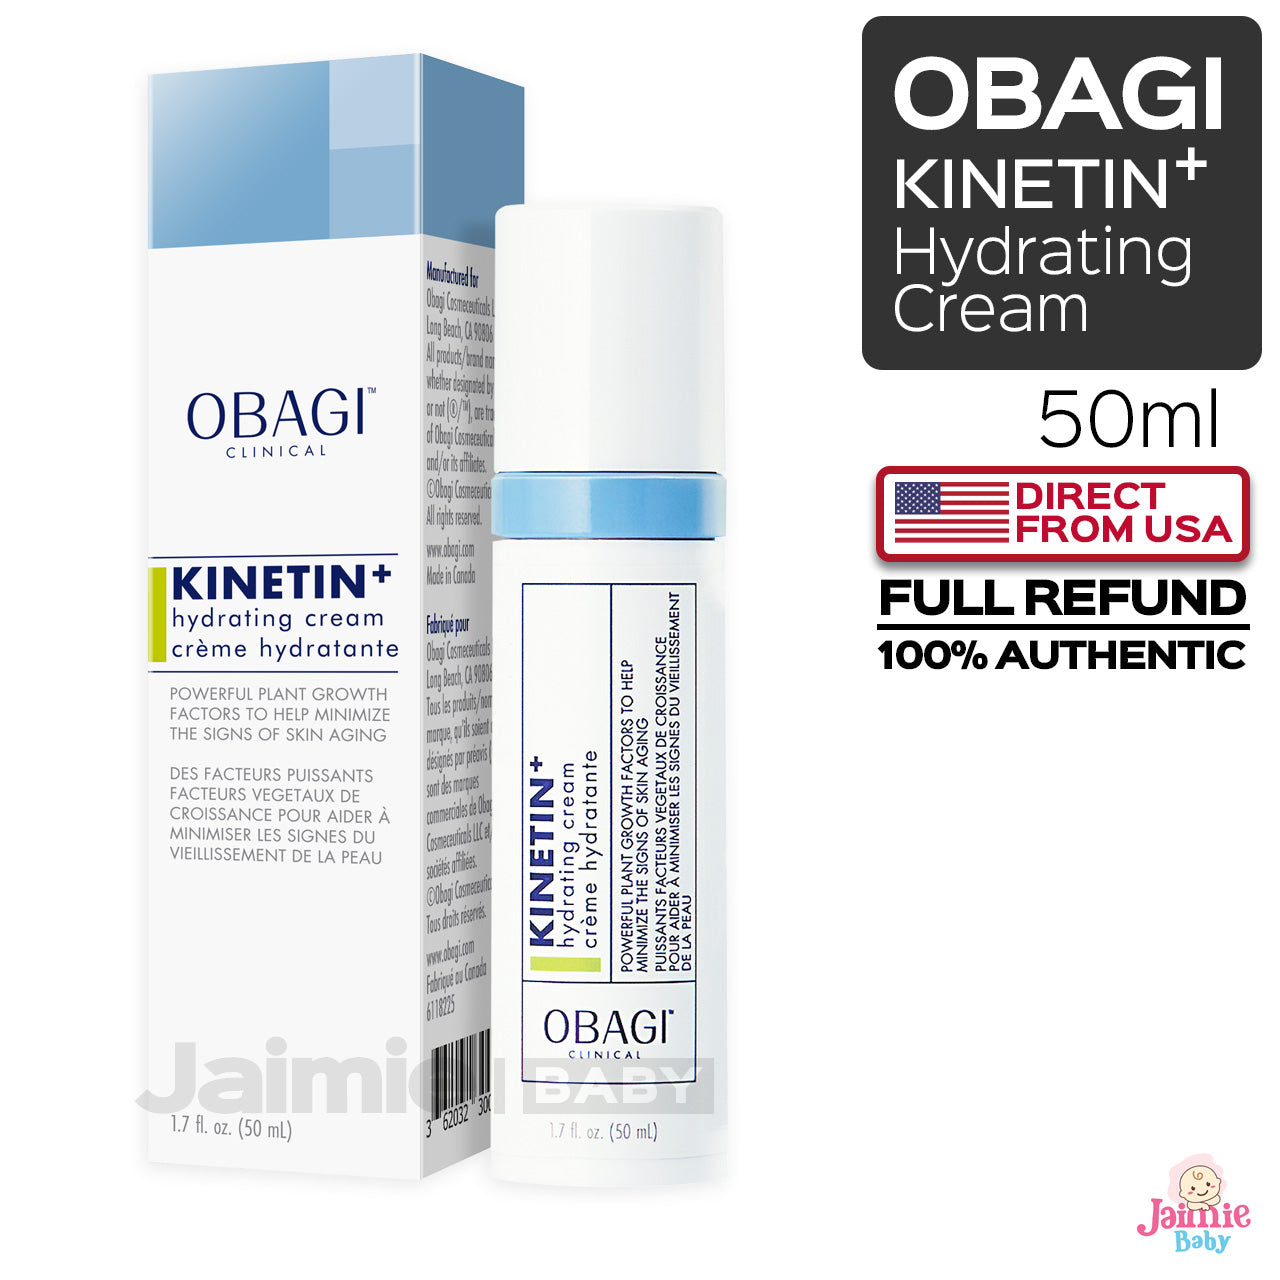 Obagi Kinetin+ hydrating cream 50ml